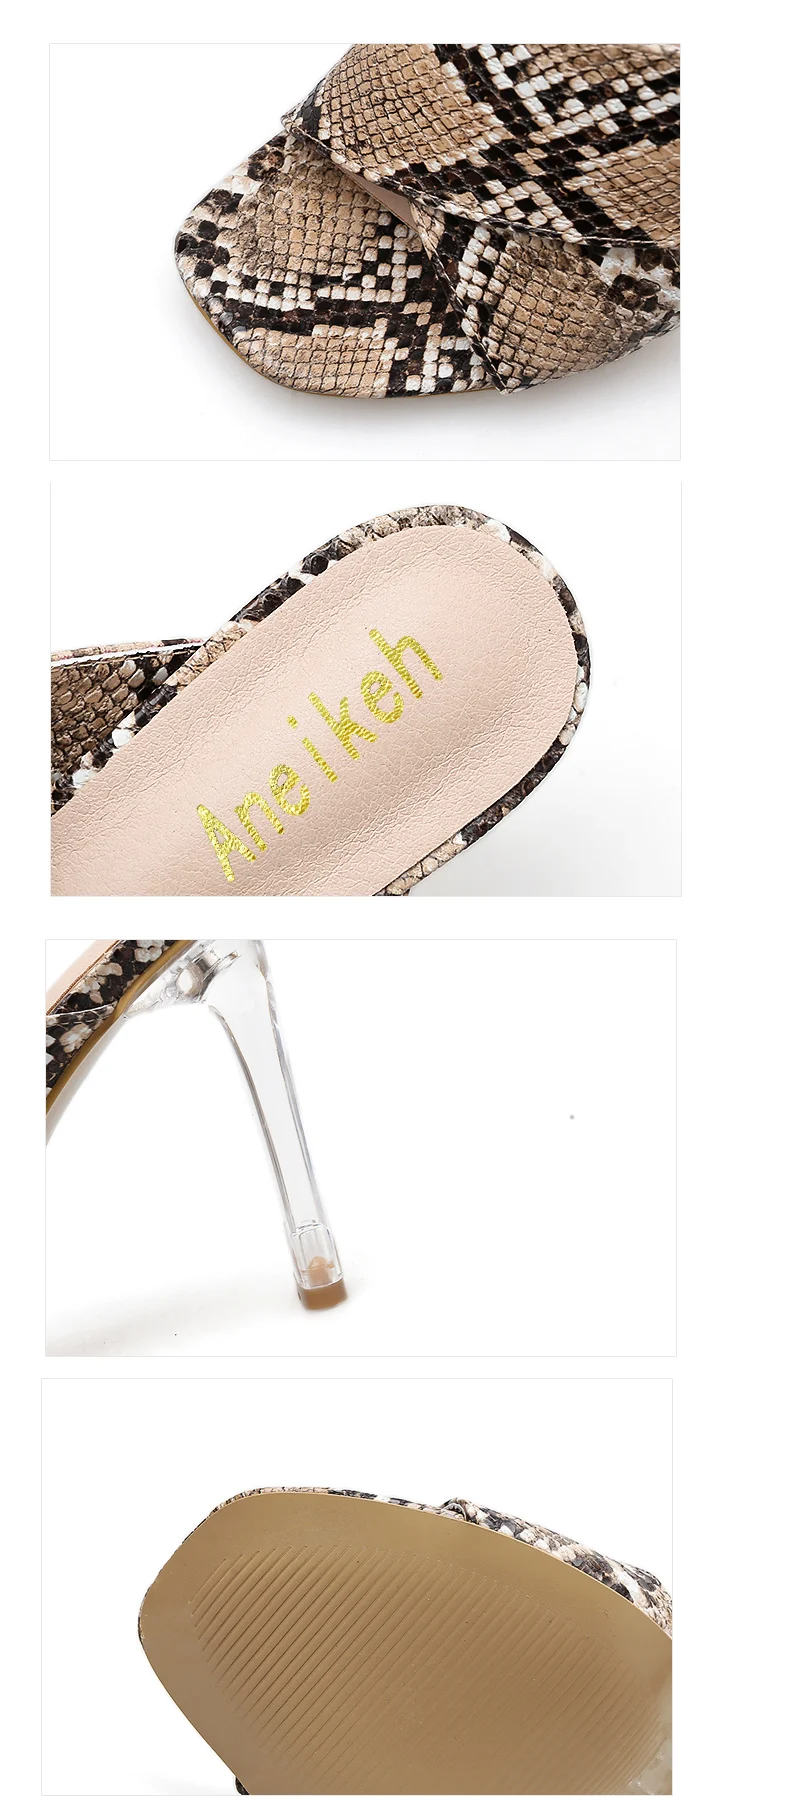 Aneikeh/Летняя обувь большого размера размеры 41, 42, босоножки на высоком каблуке-шпильке женская обувь открытый носок, каблук из плексигласа, туфли-лодочки леопардовой расцветки